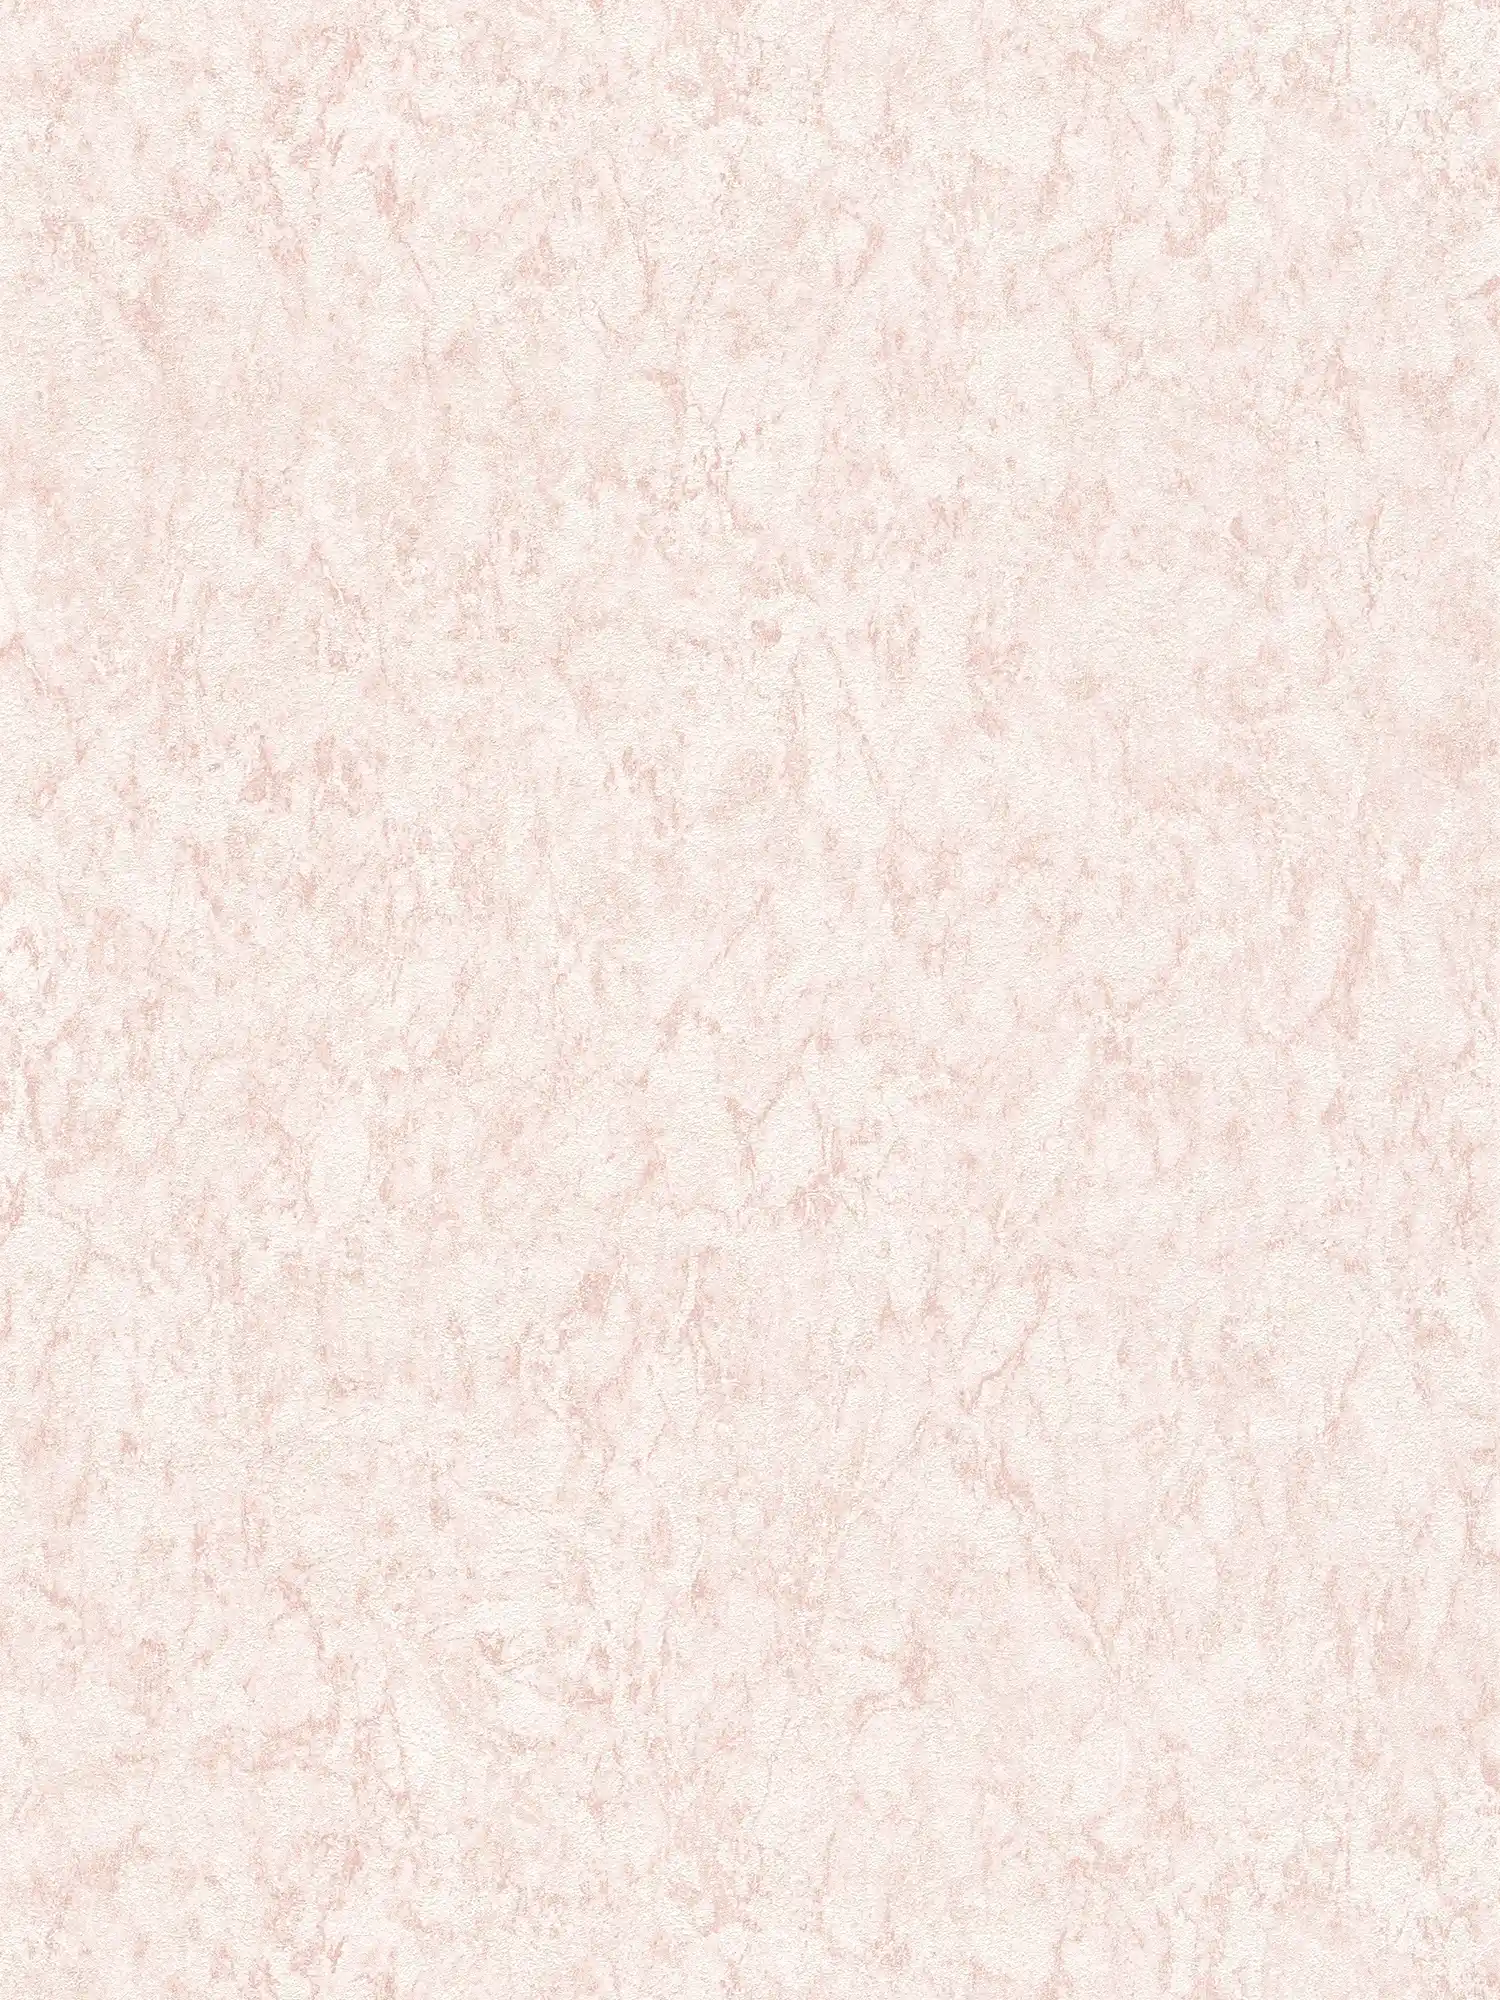 Eenheidsbehang met structuureffect & gevlekt design - roze, crème
